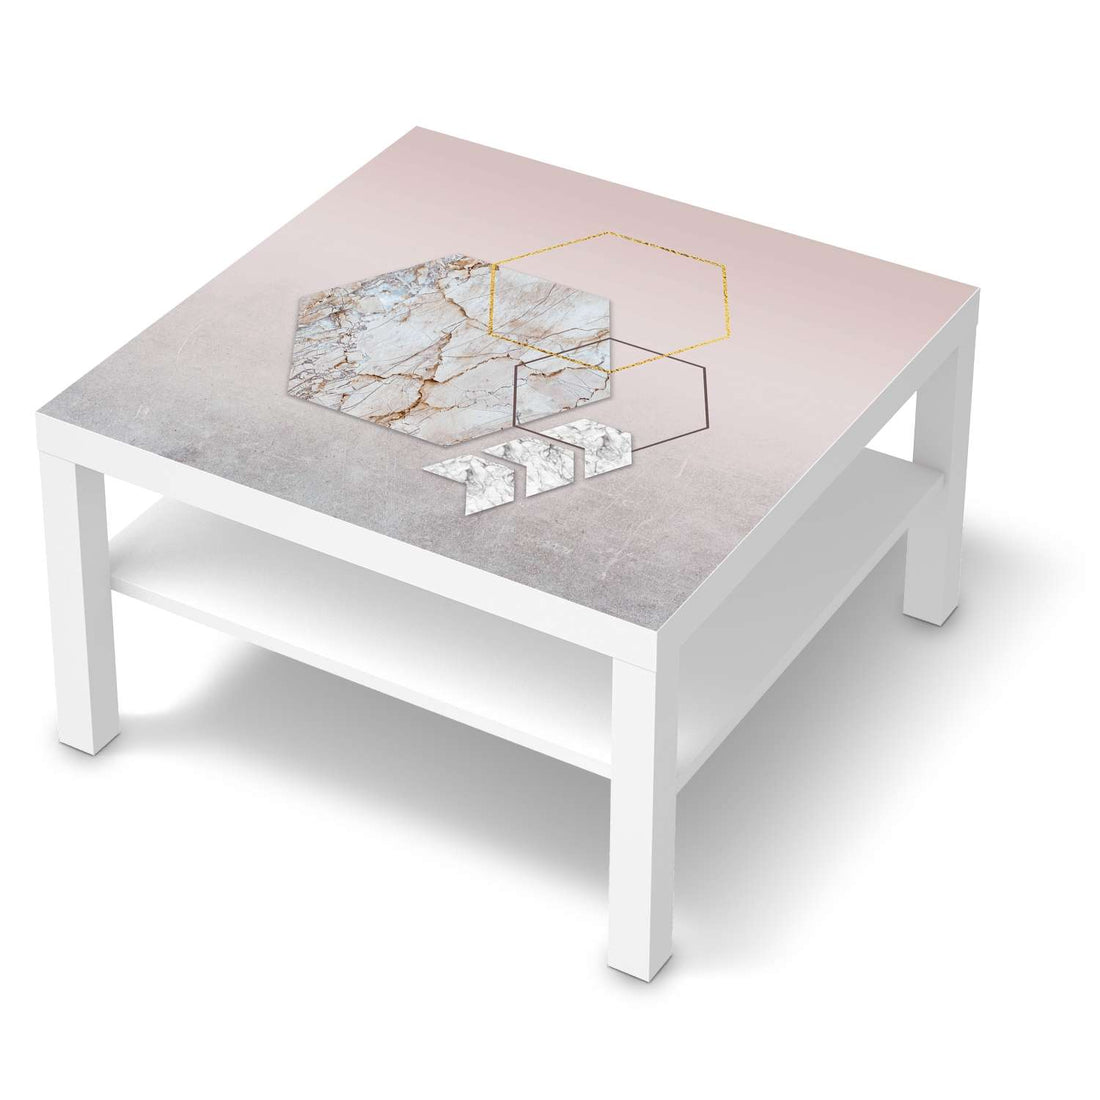 Selbstklebende Folie Hexagon - IKEA Lack Tisch 78x78 cm - weiss